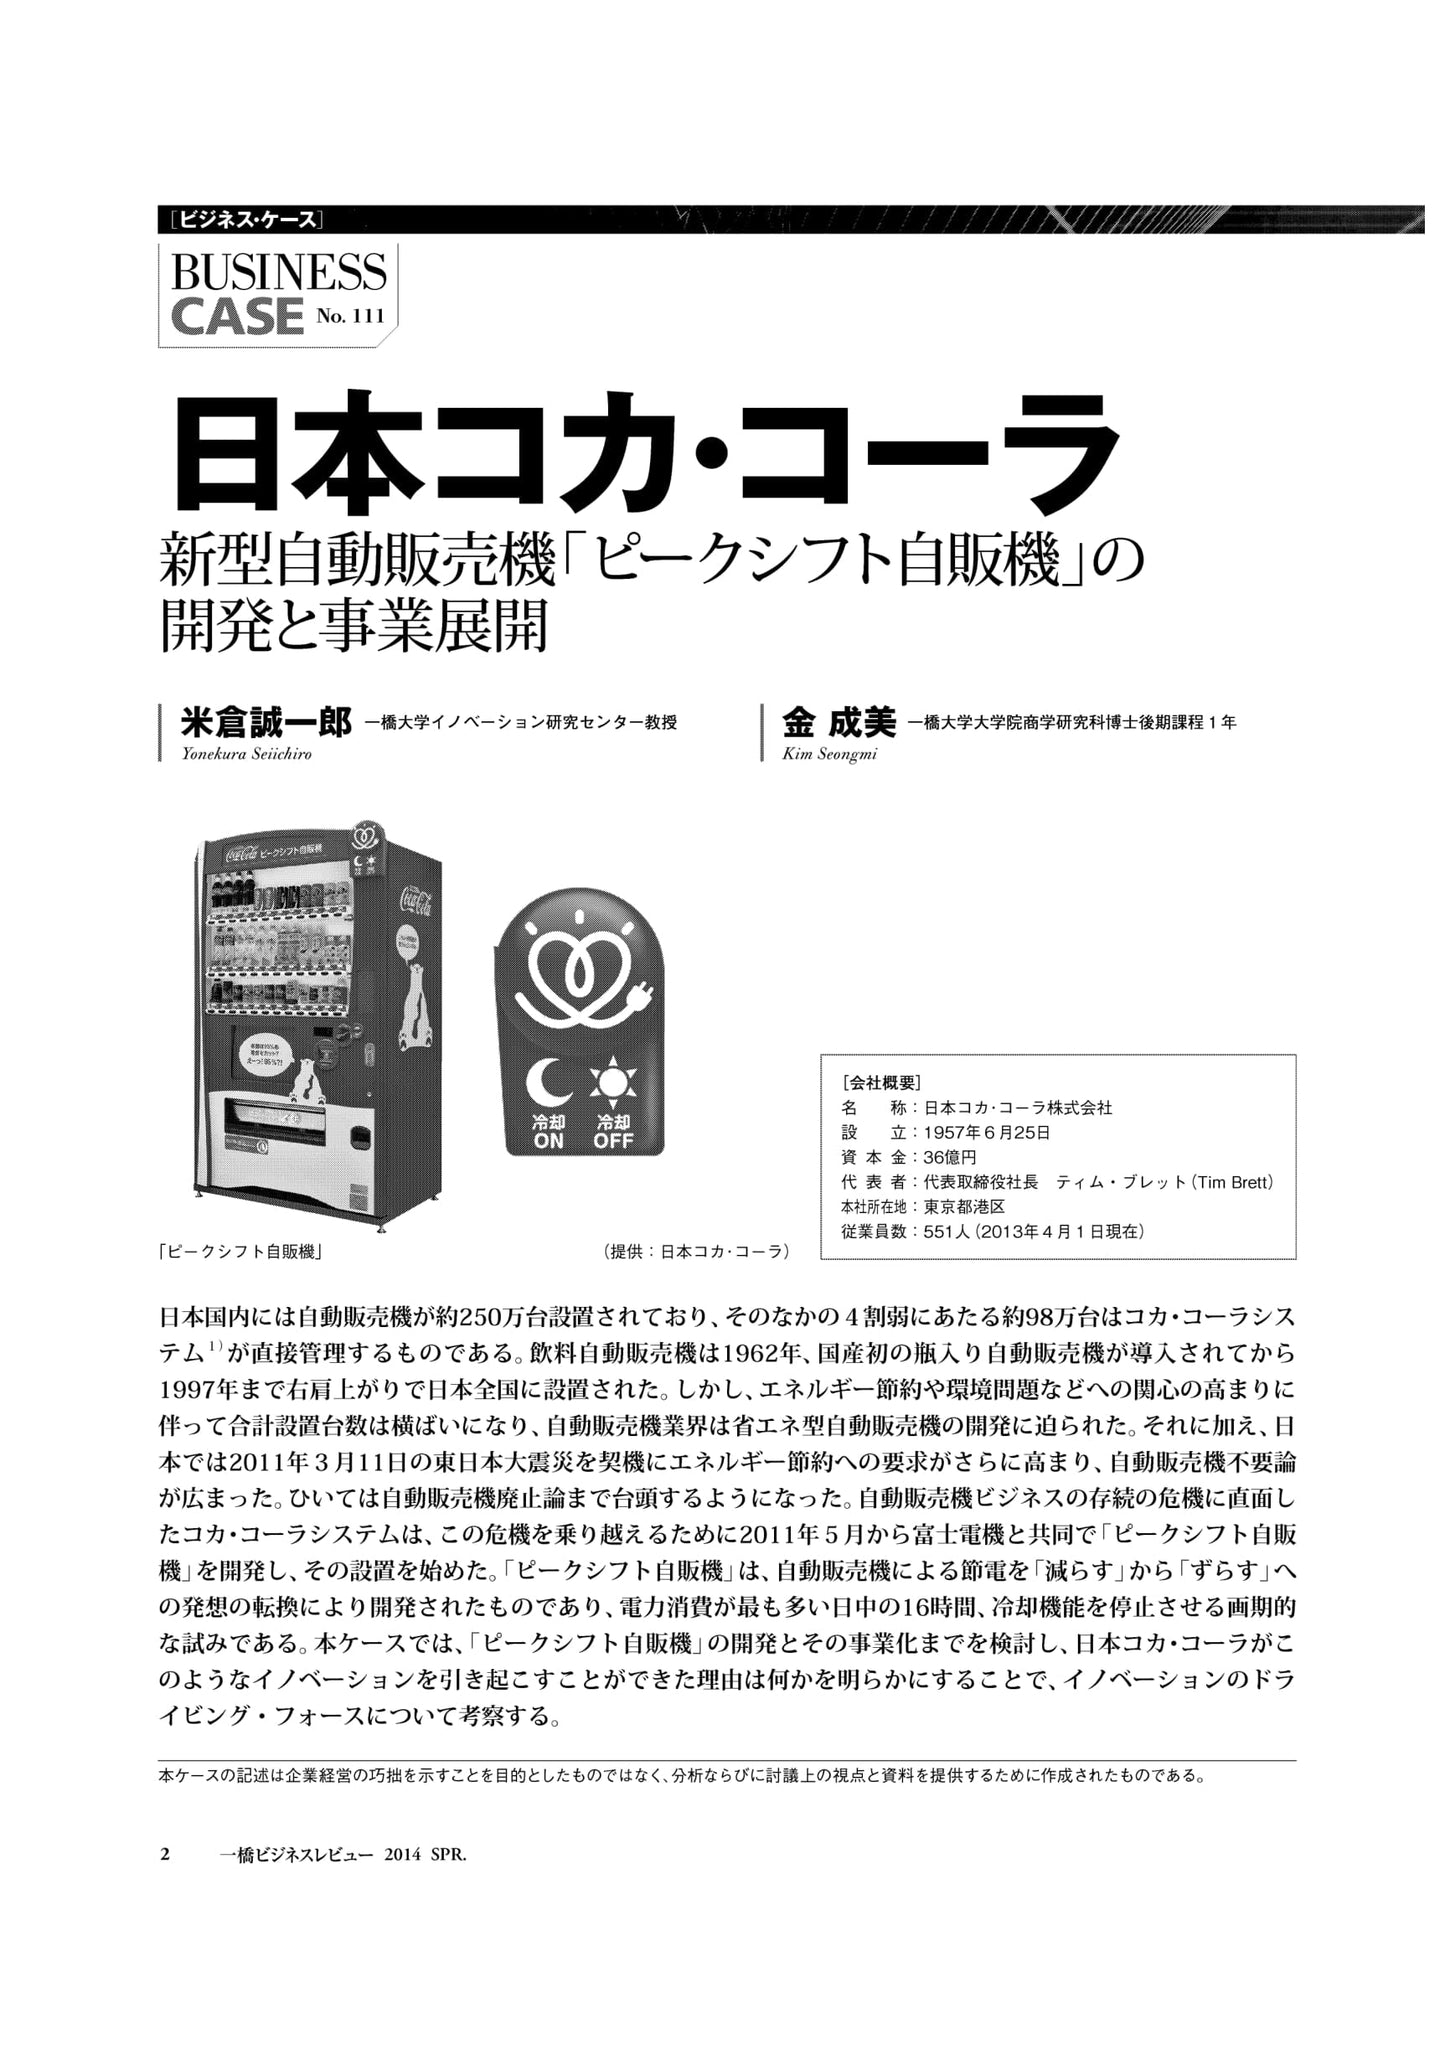 日本コカ･コーラ : 新型自動販売機「ピークシフト自販機」の開発と事業展開